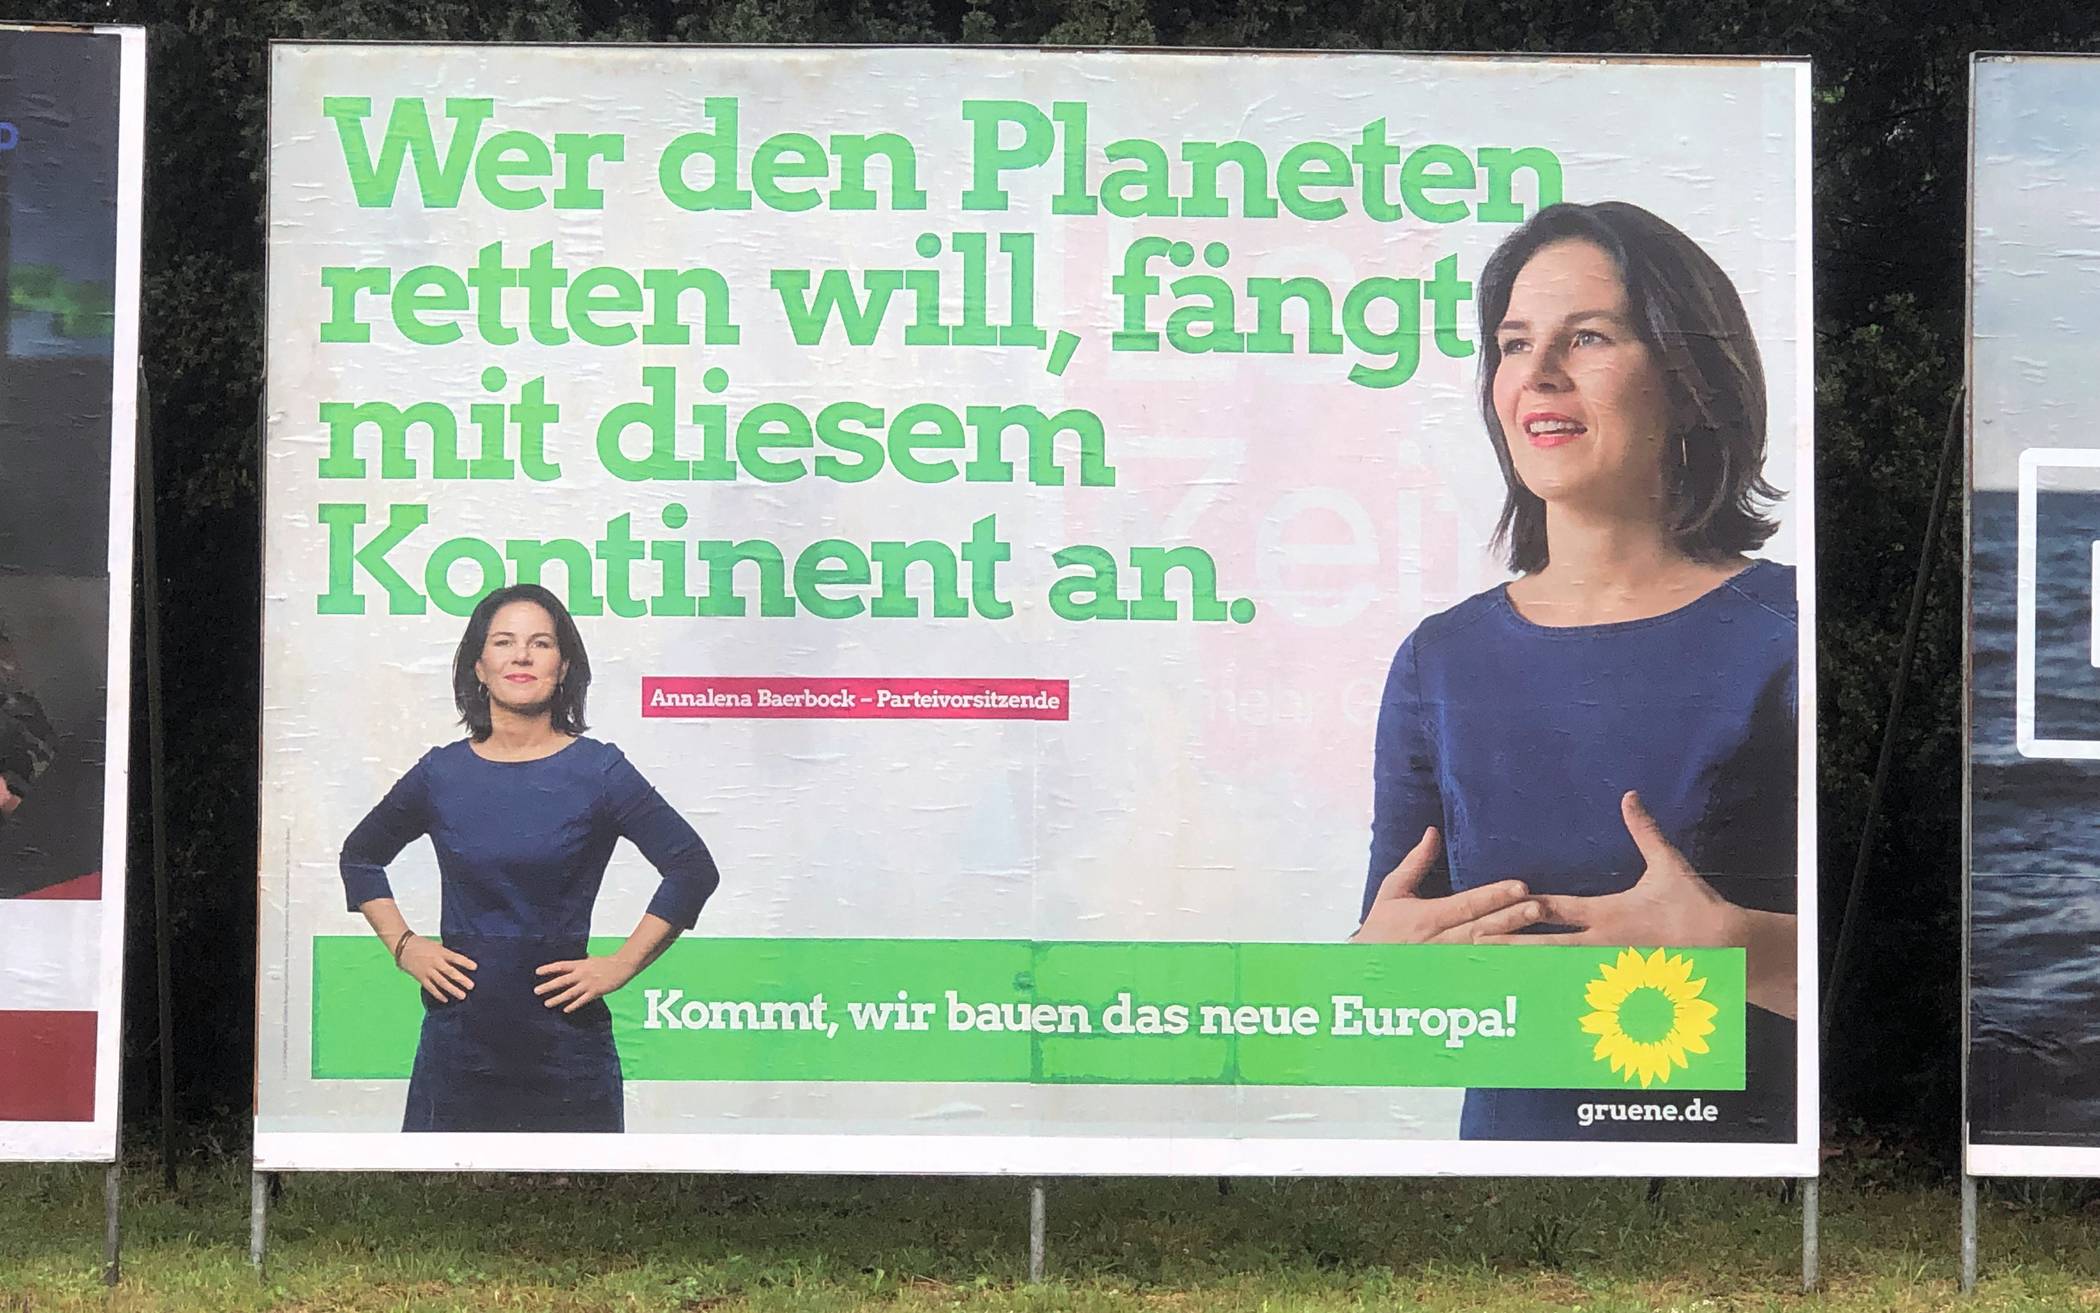 Grüne: Grüne Sätze als Unterscheidungsmerkmal. Die Plakate der Grünen sind stark...